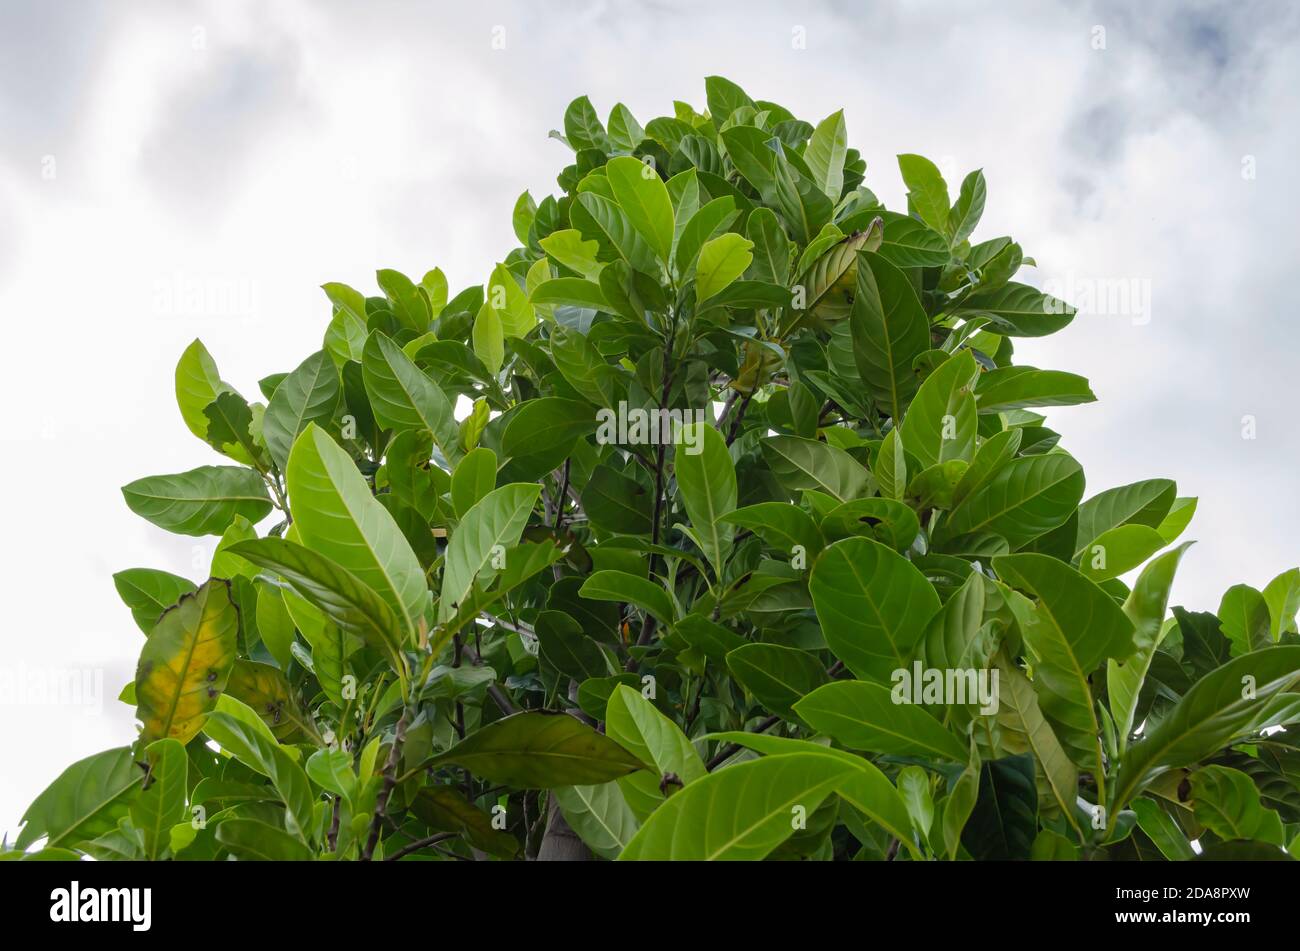 Top Of Articarpus heterophyllus Tree Stock Photo